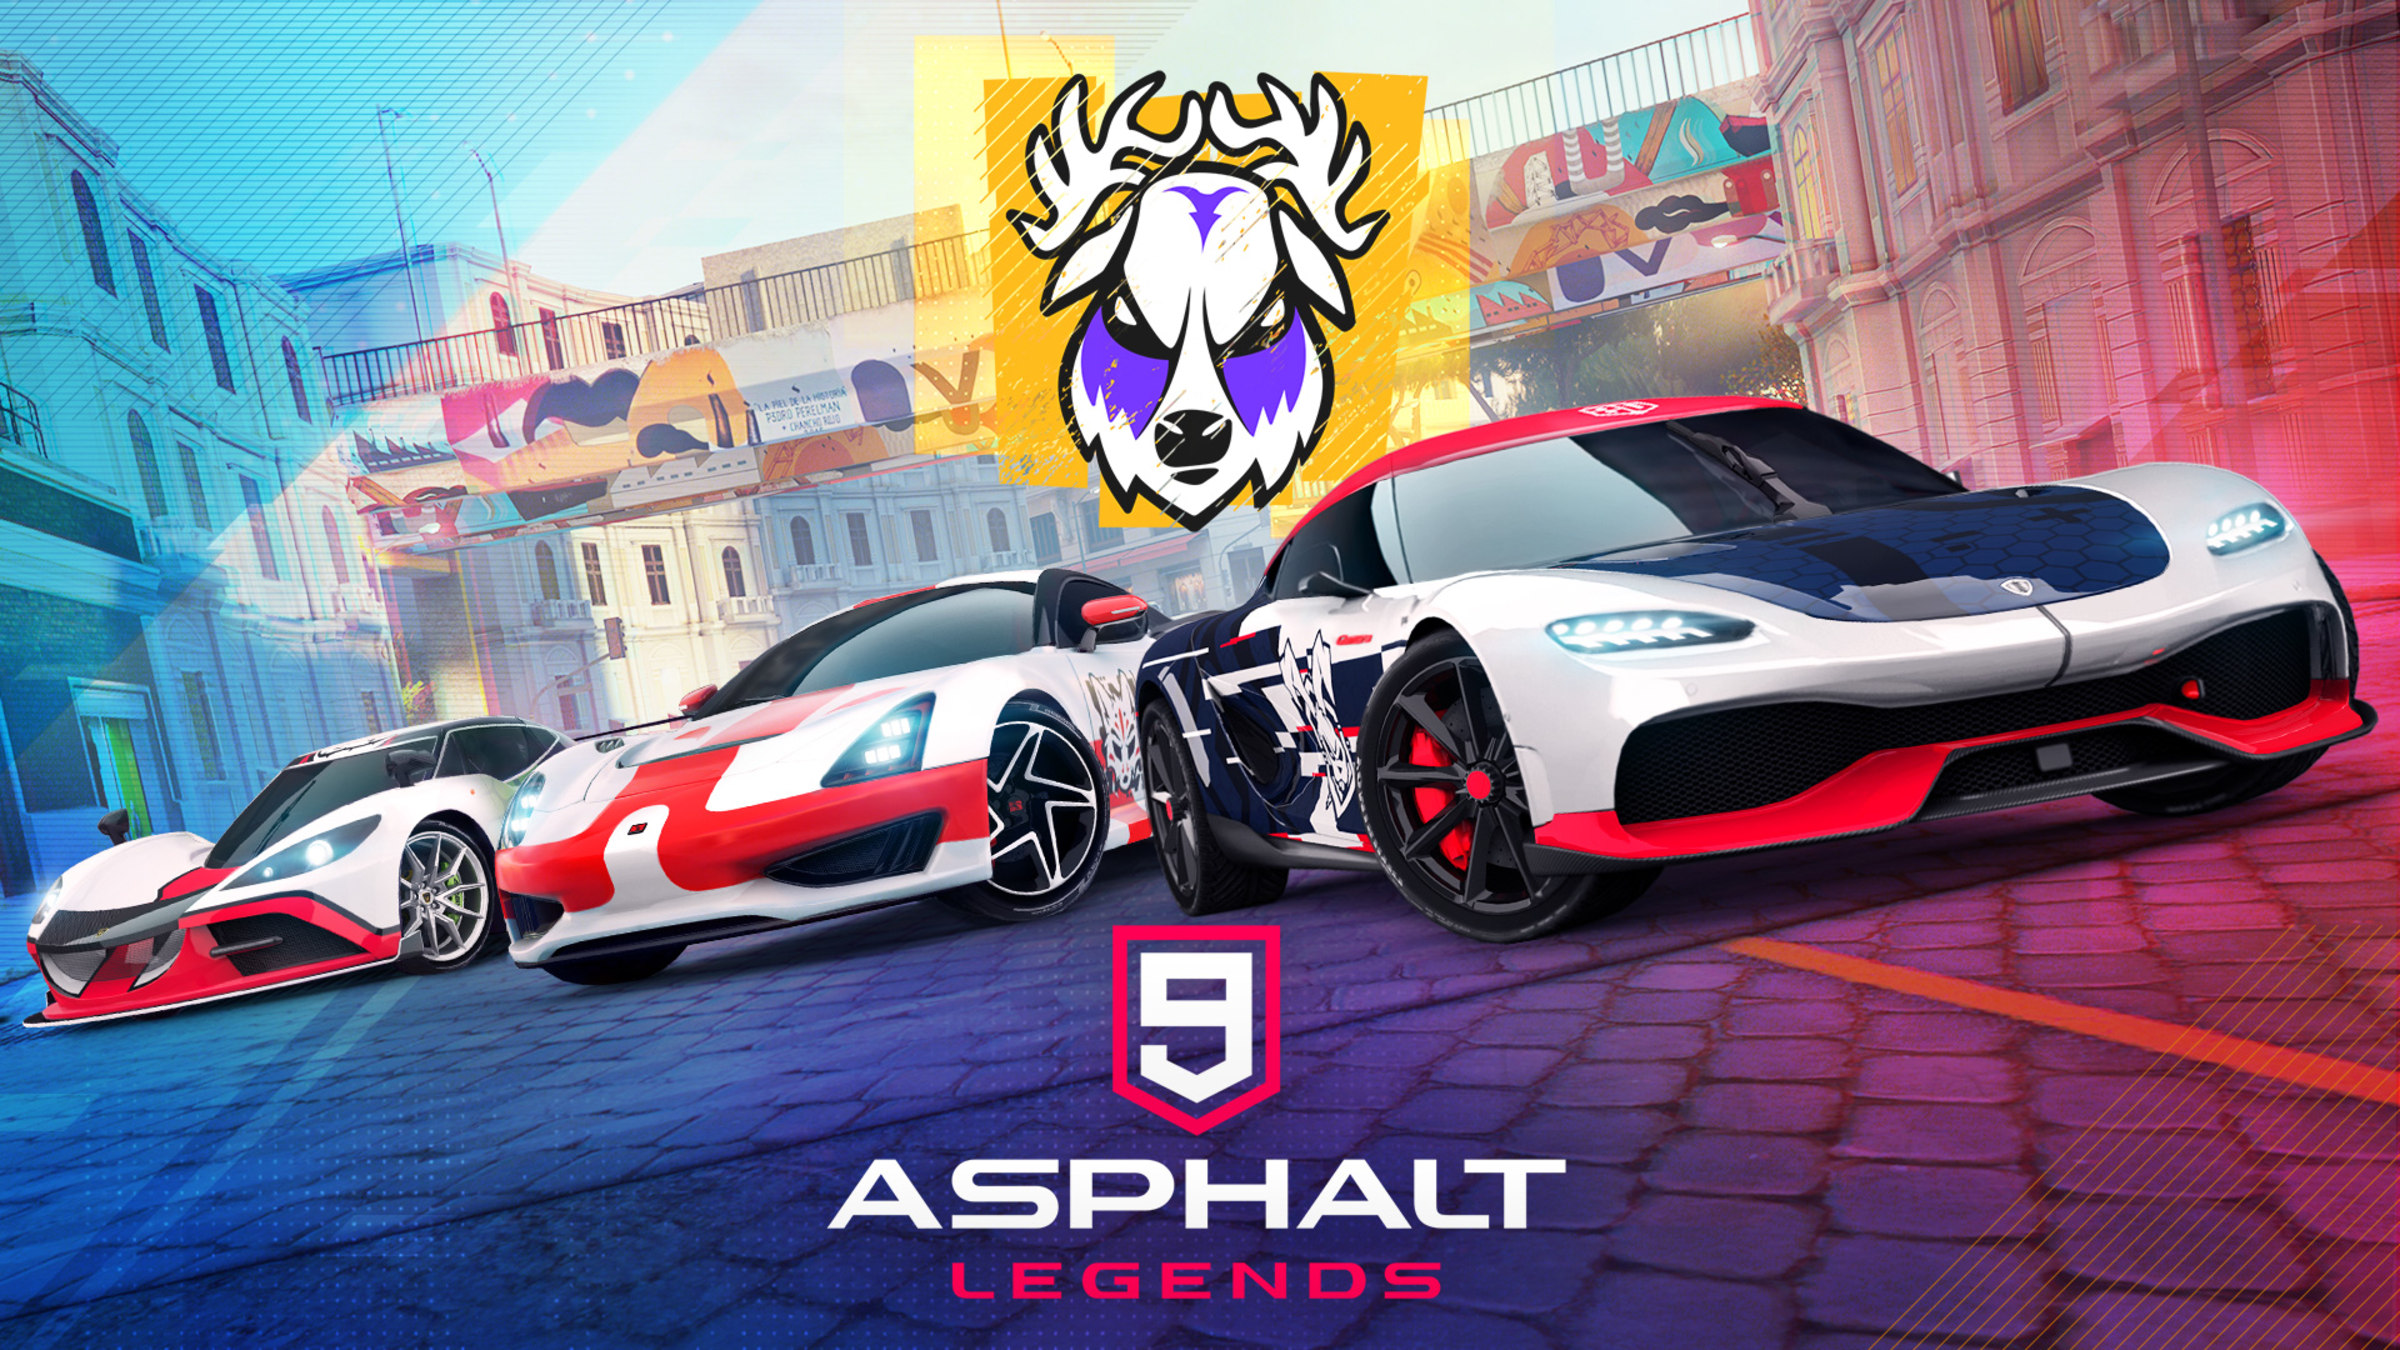 Asphalt 8 - Jogo de Carros – Apps no Google Play